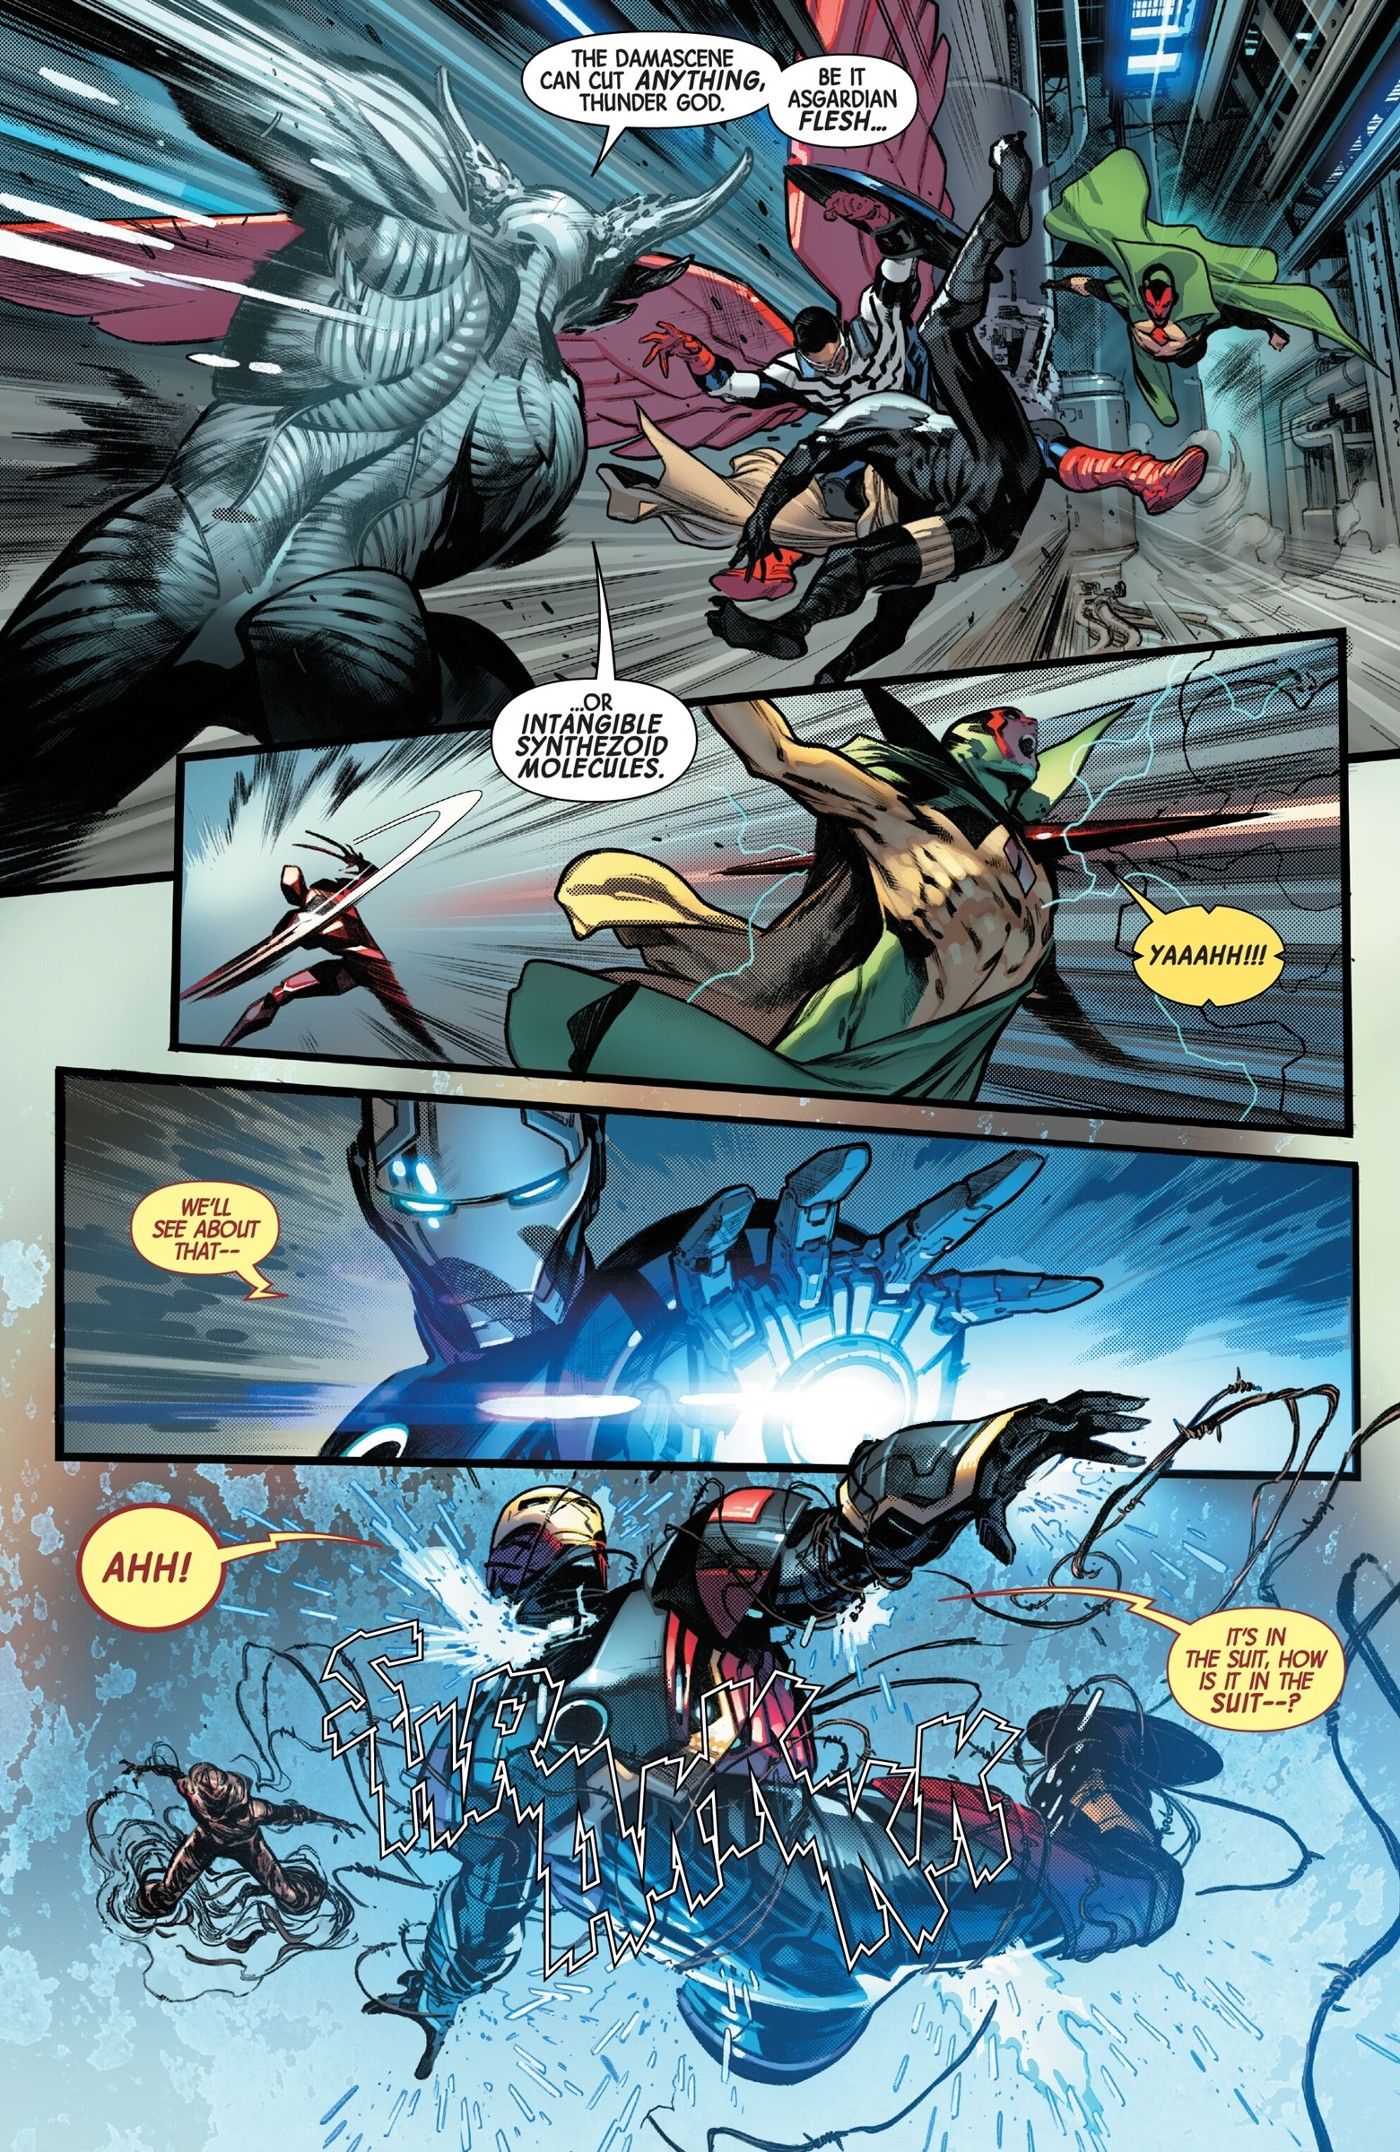 Four panels of Damascene fighting the Avengers